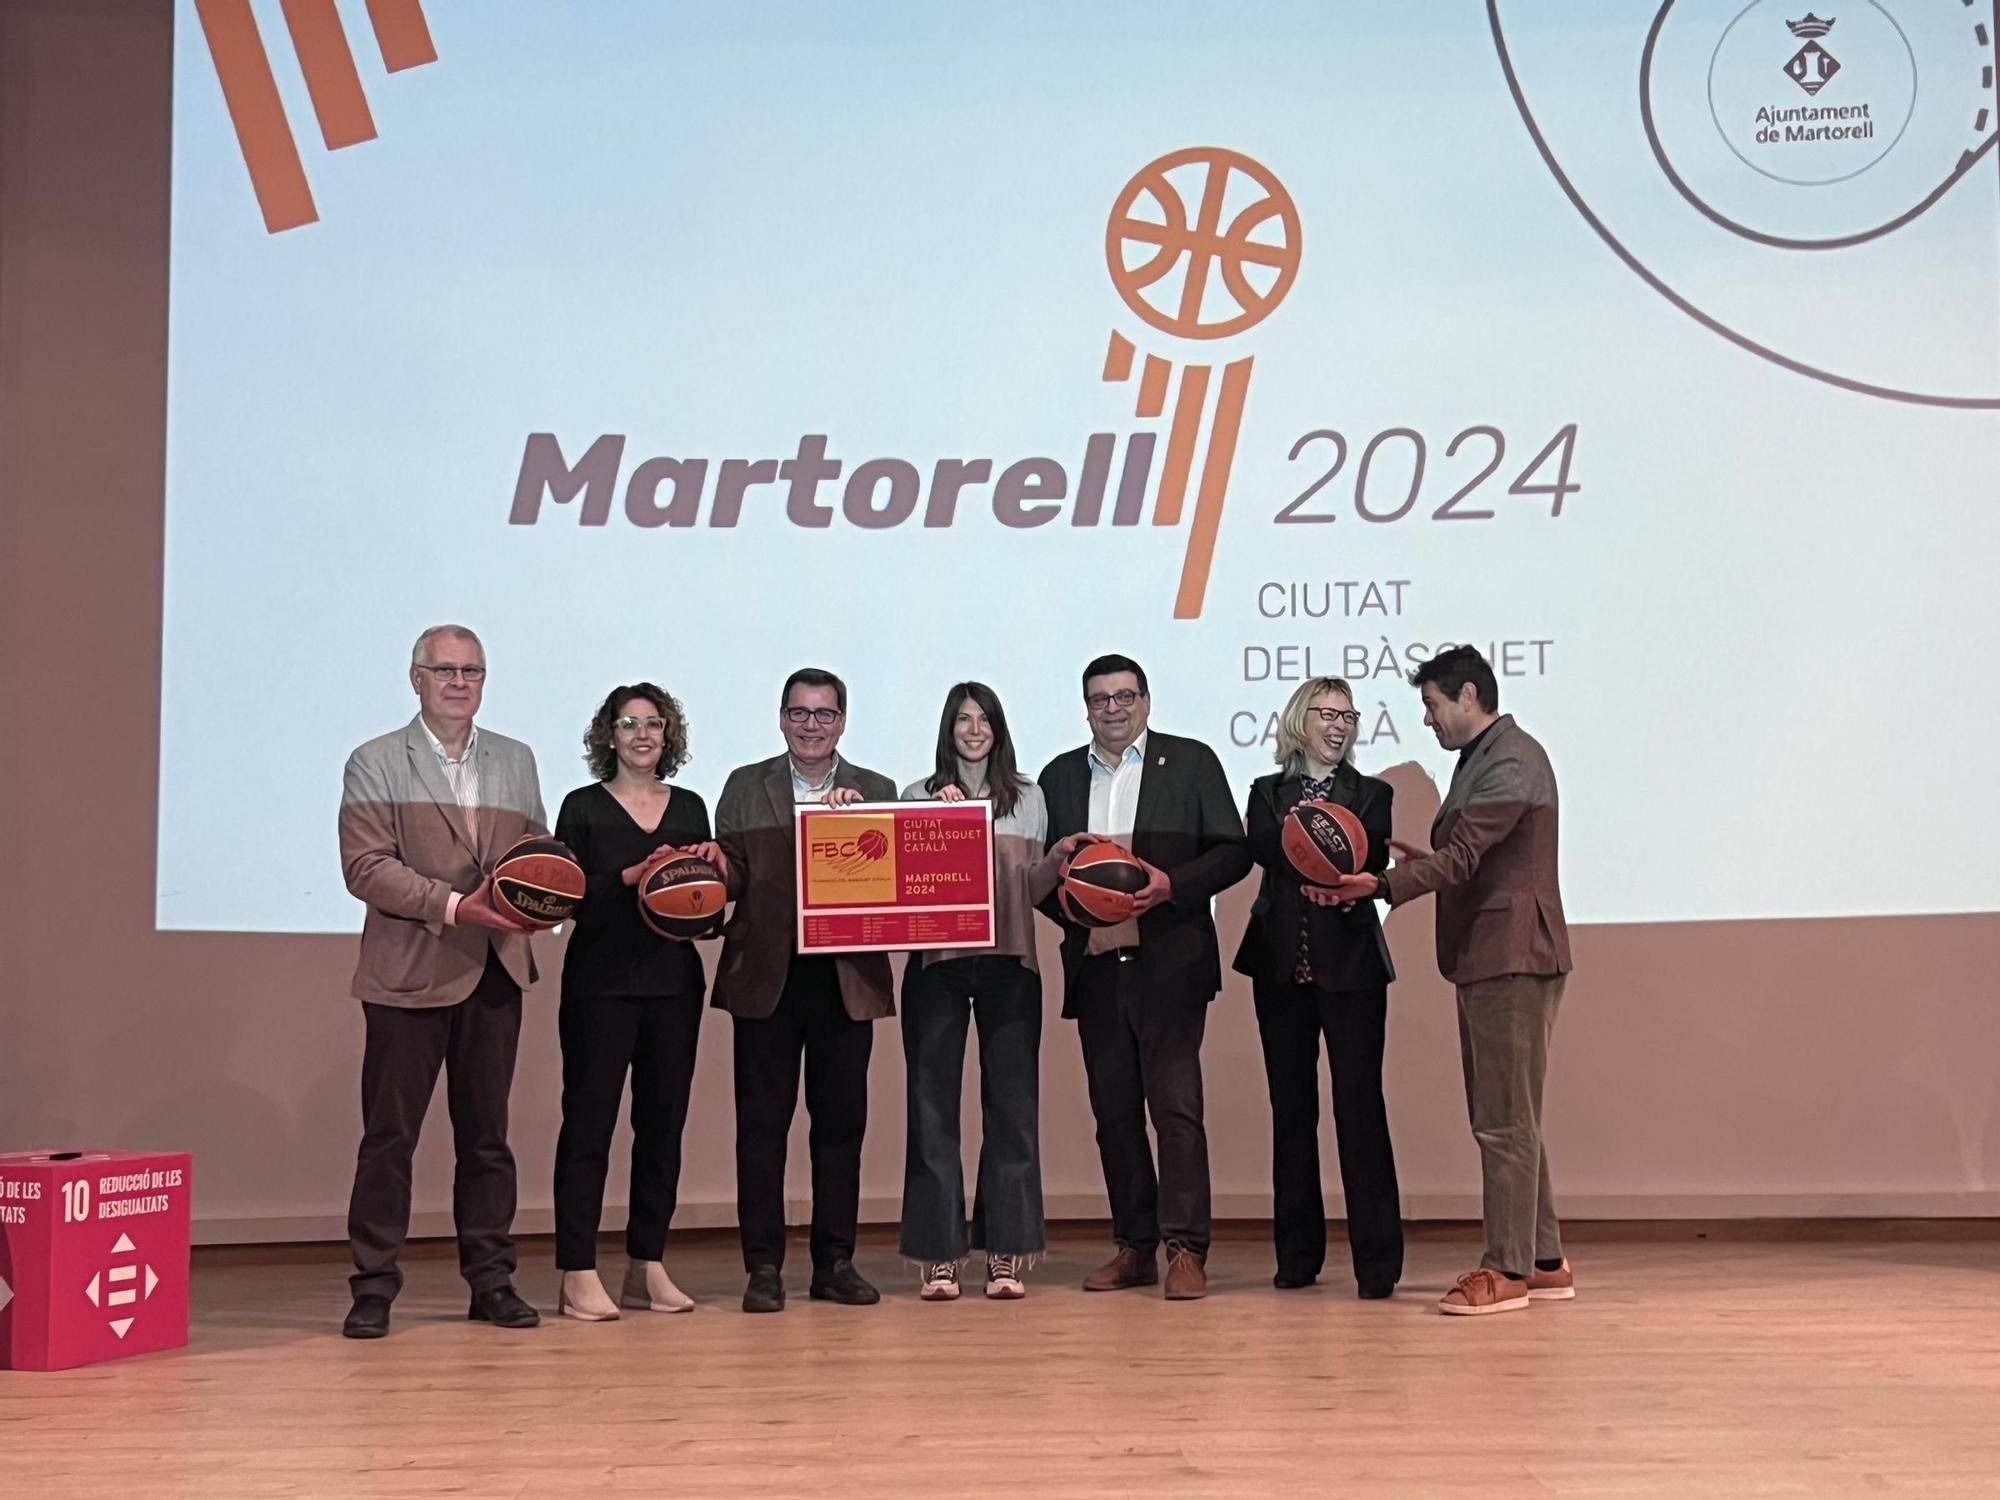 Imatges de la presentació de Martorell com a Ciutat del Bàsquet Català 2024